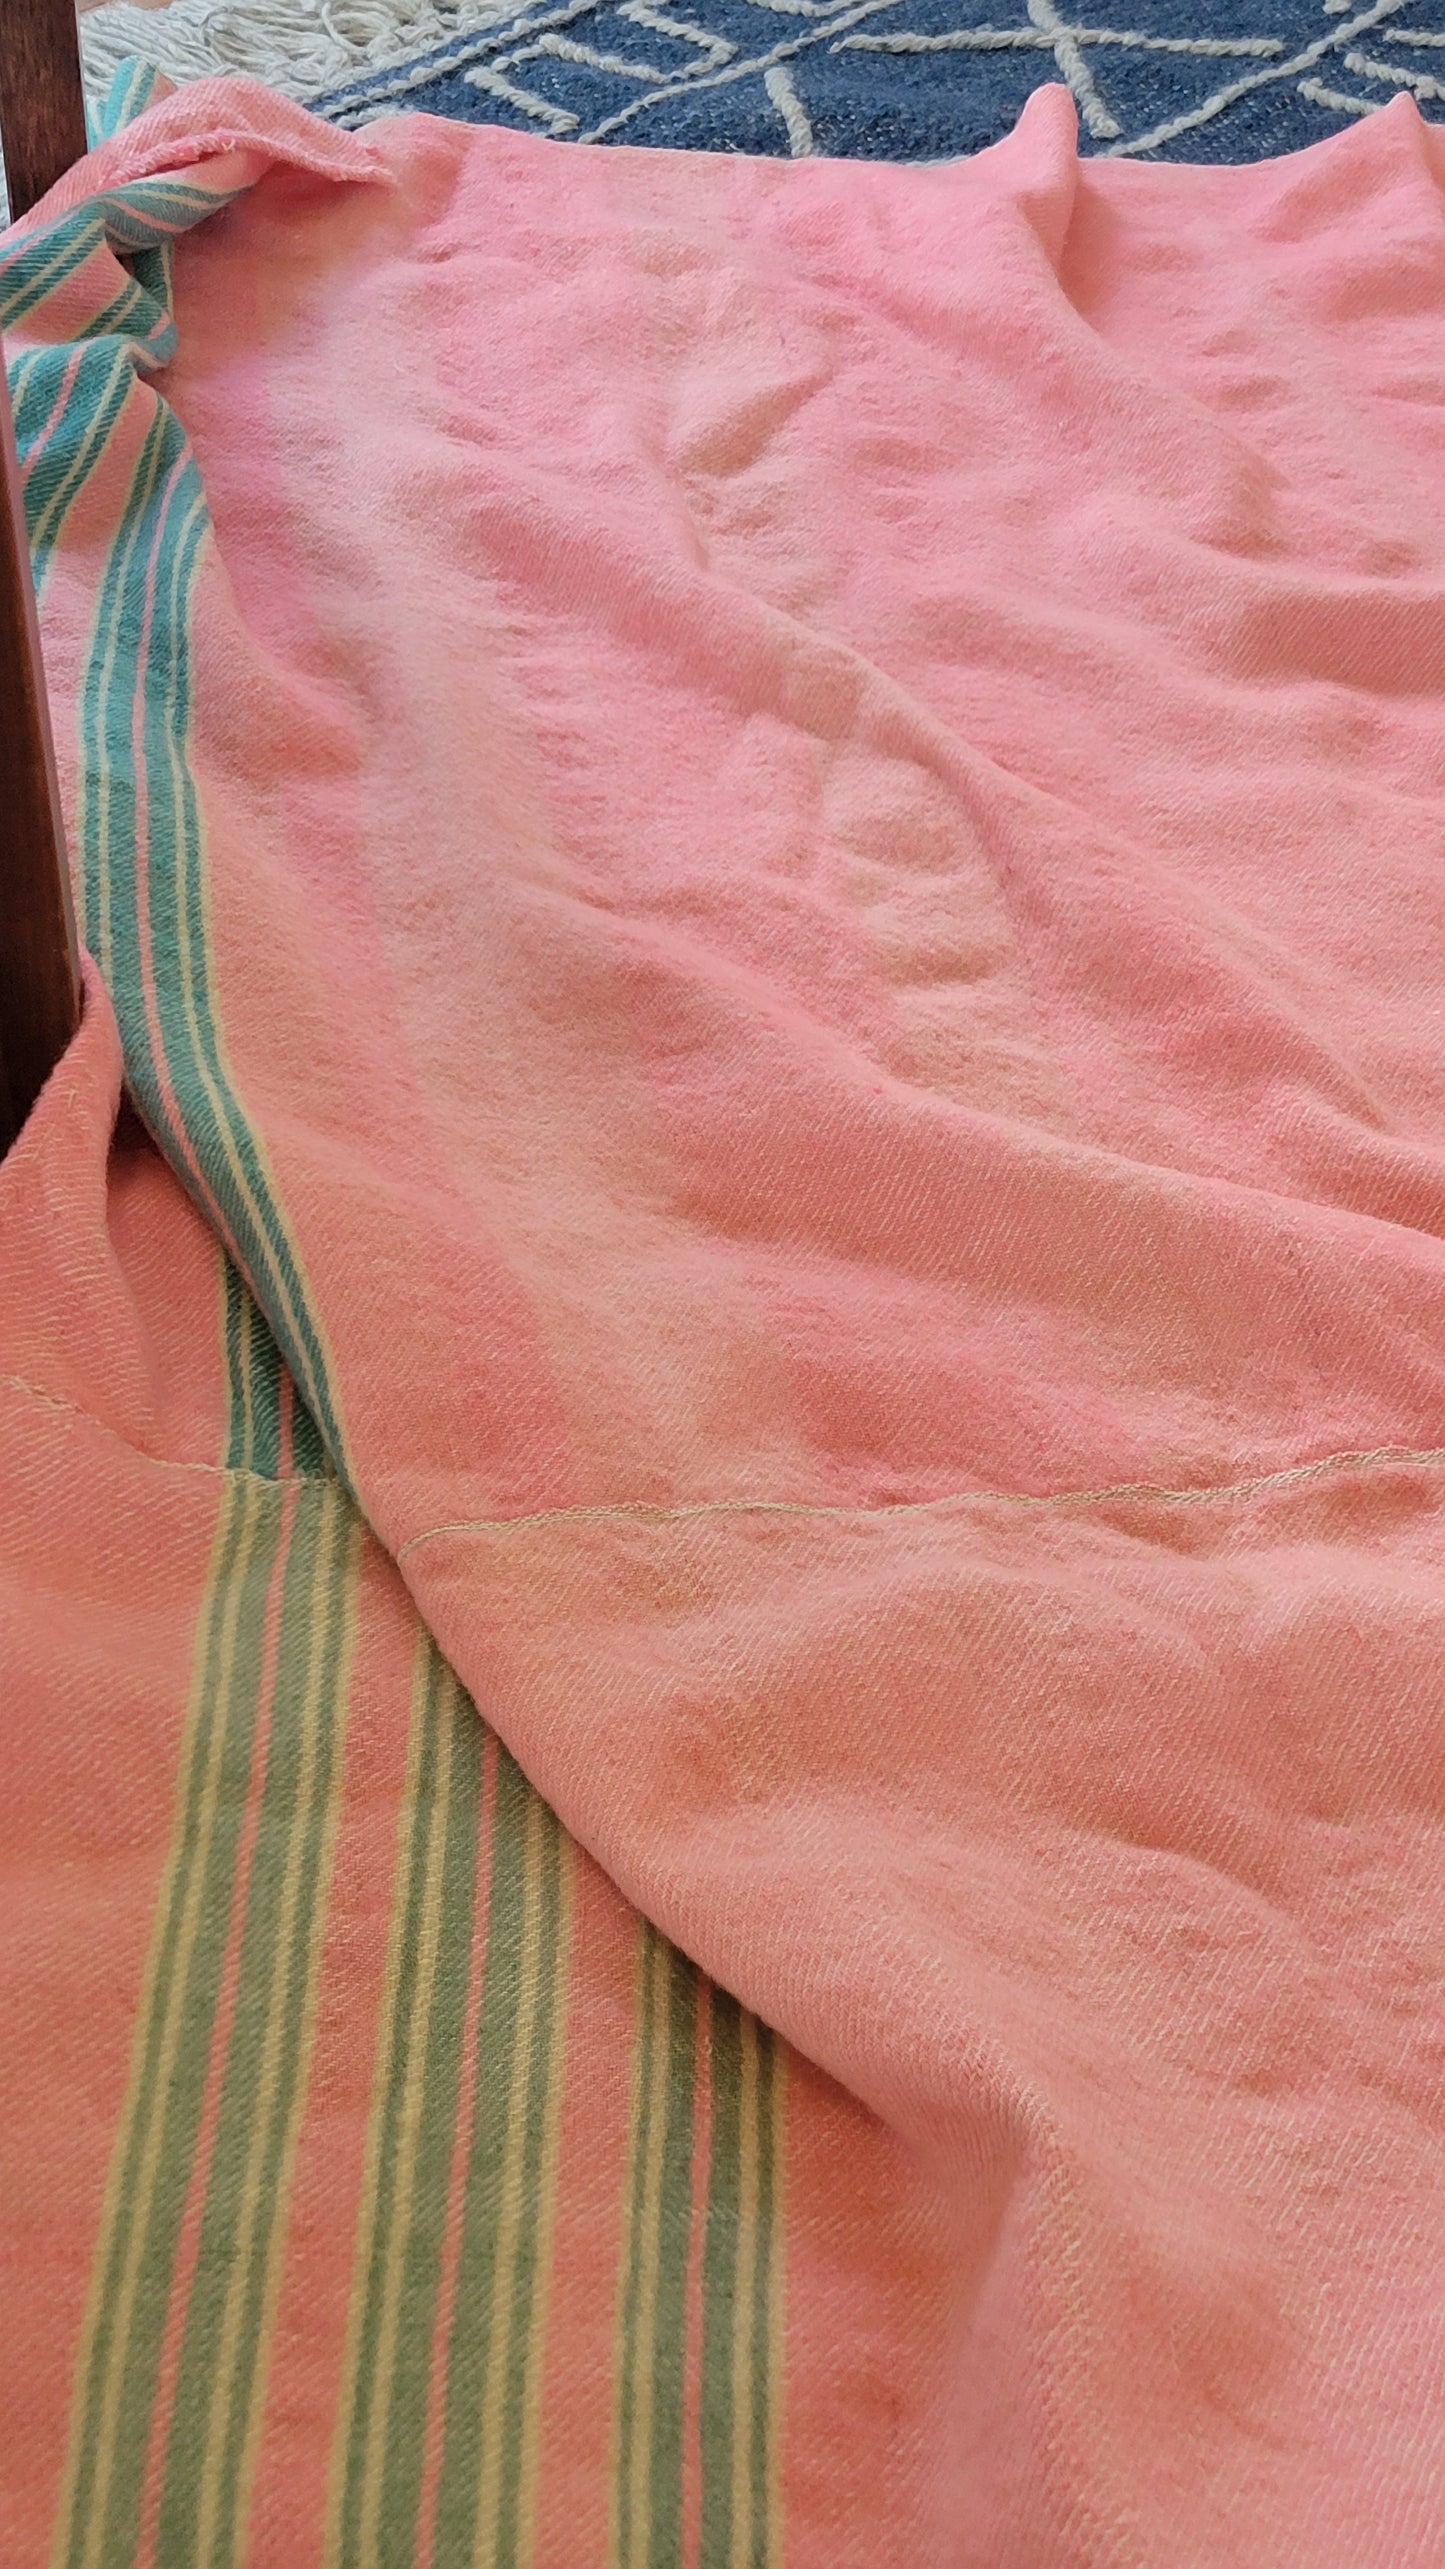 Blanket (2 blankets sewen together)